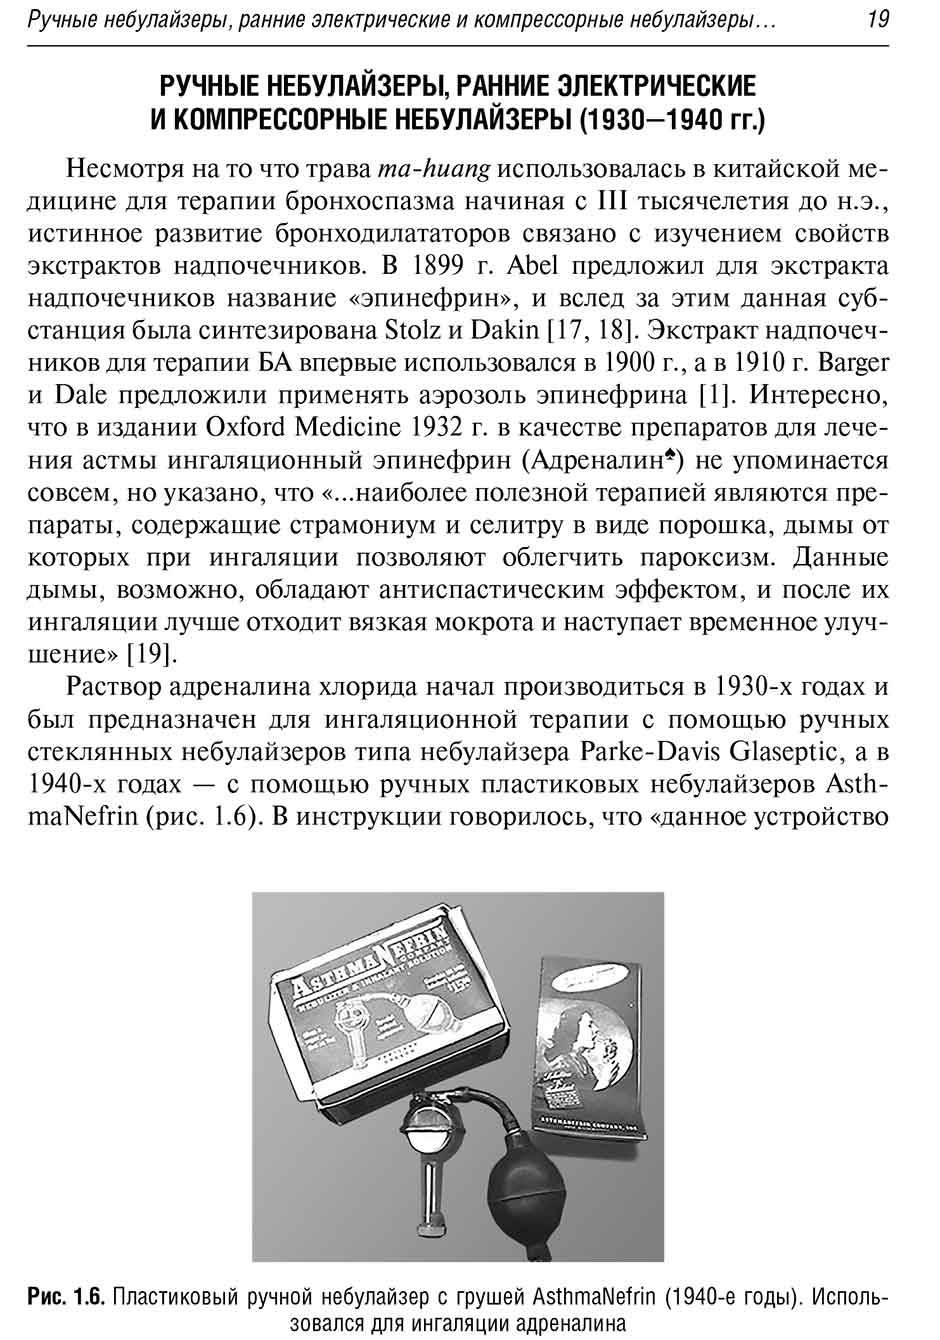 Рис. 1.6. Пластиковый ручной небулайзер с грушей AsthmaNefrin (1940-е годы).